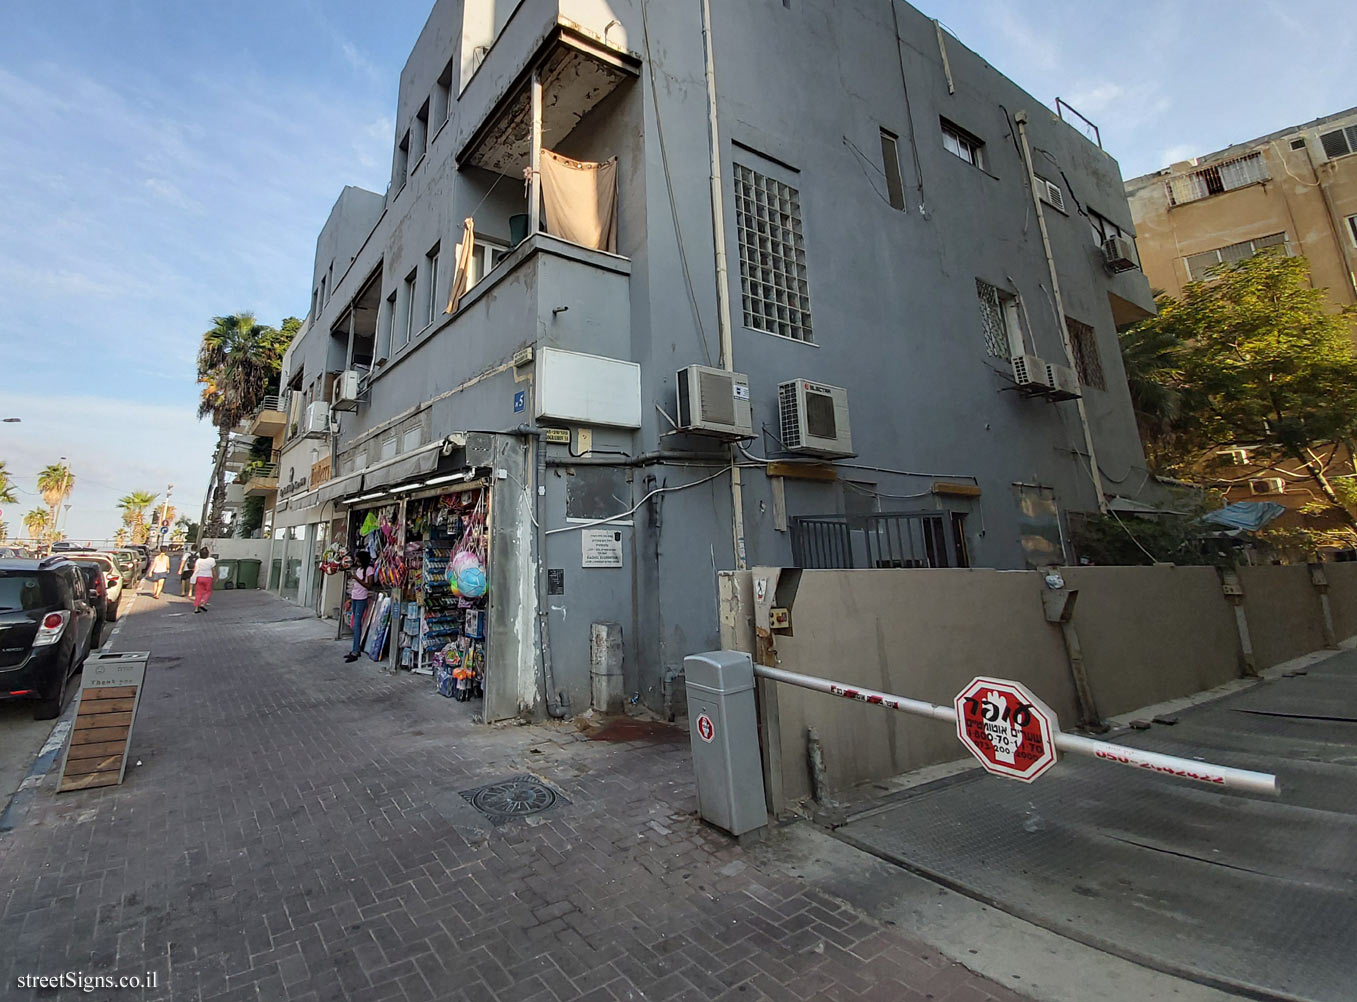 The house of Rachel Blubshtein - Bograshov St 5, Tel Aviv-Yafo, Israel